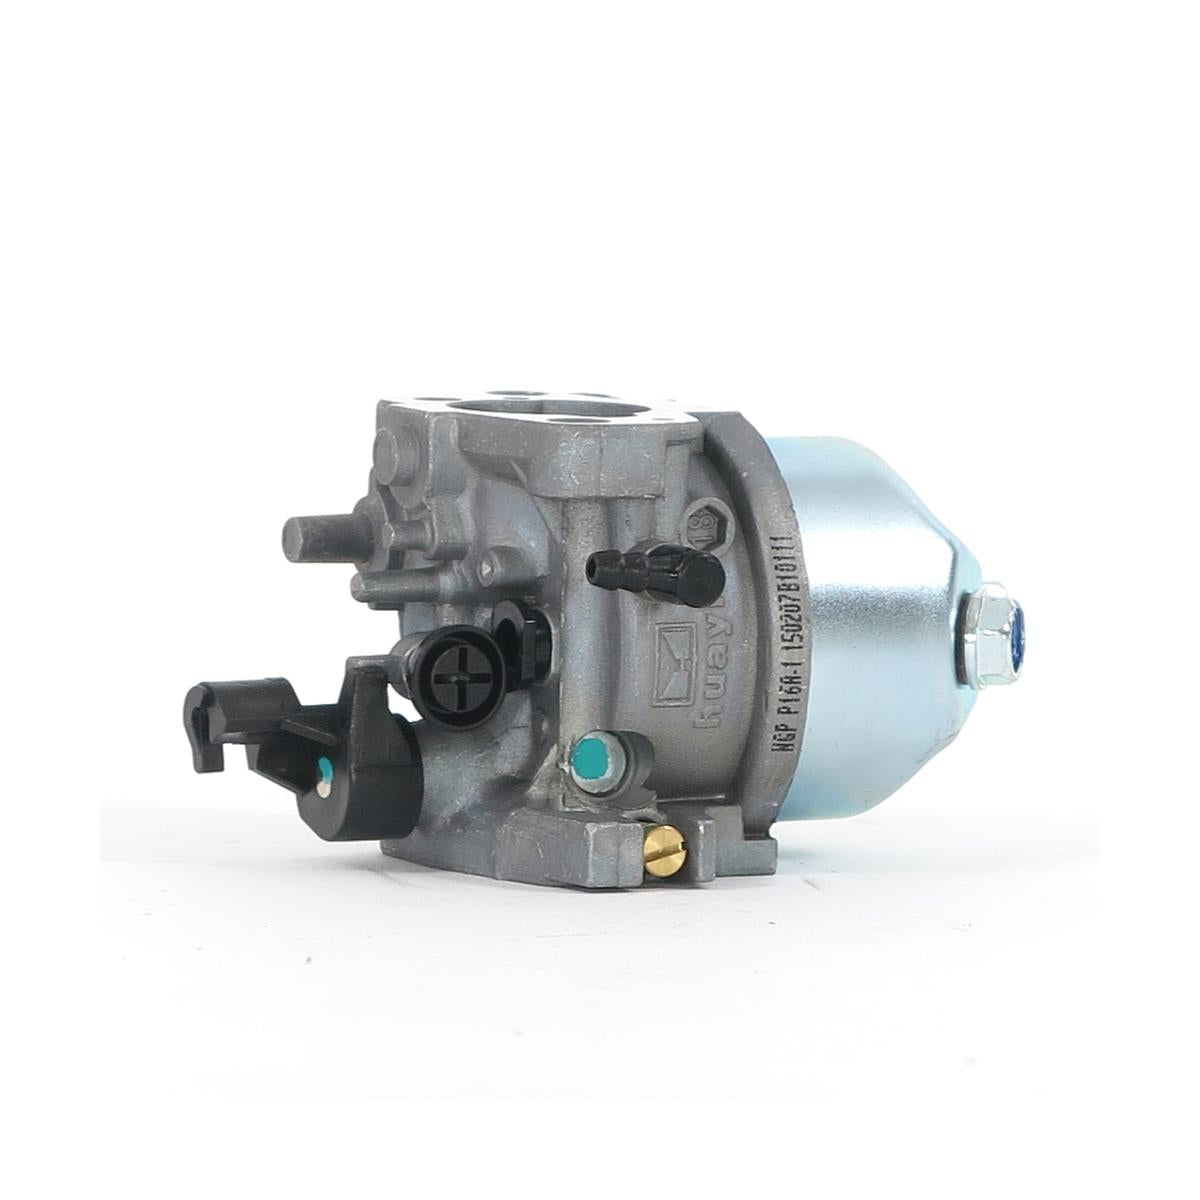 FUXTEC - Carburateur pour tondeuse FX-RM1855 / RM2055